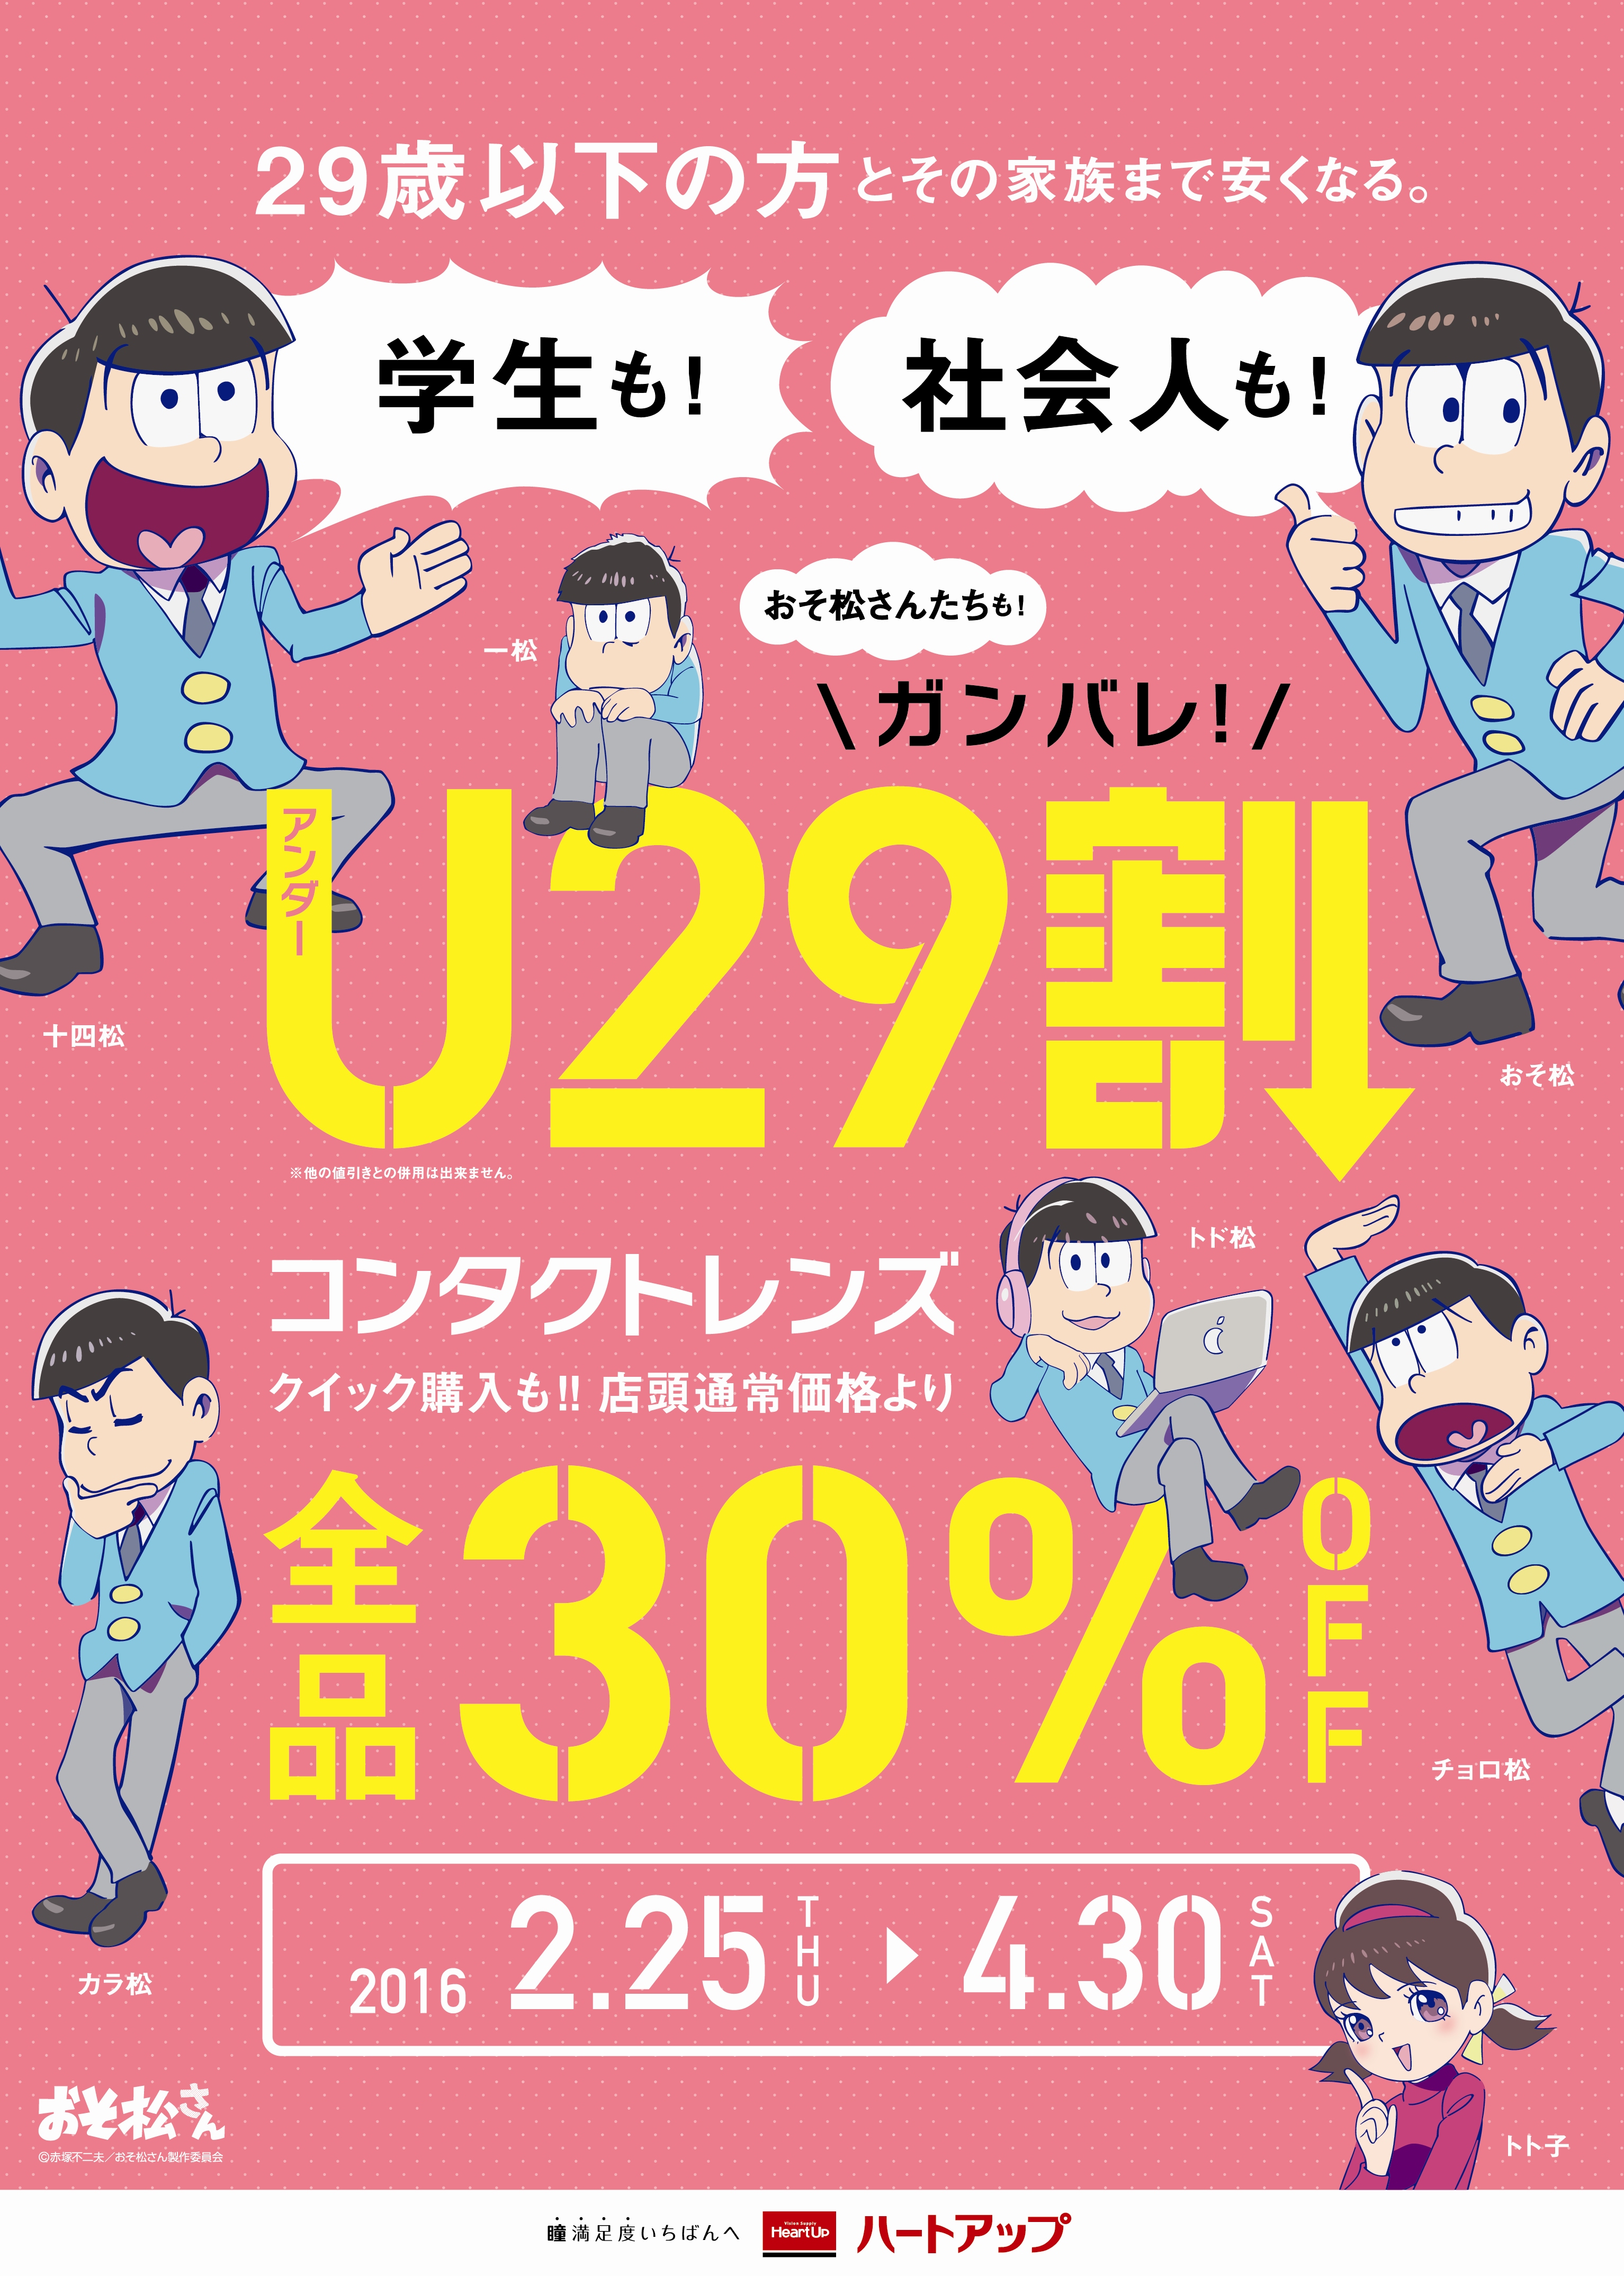 おそ松さん も割引対象 全国コンタクトレンズ メガネのハートアップが 29歳以下を対象とした U29割 キャンペーンを開始 株式会社日本オプティカルのプレスリリース